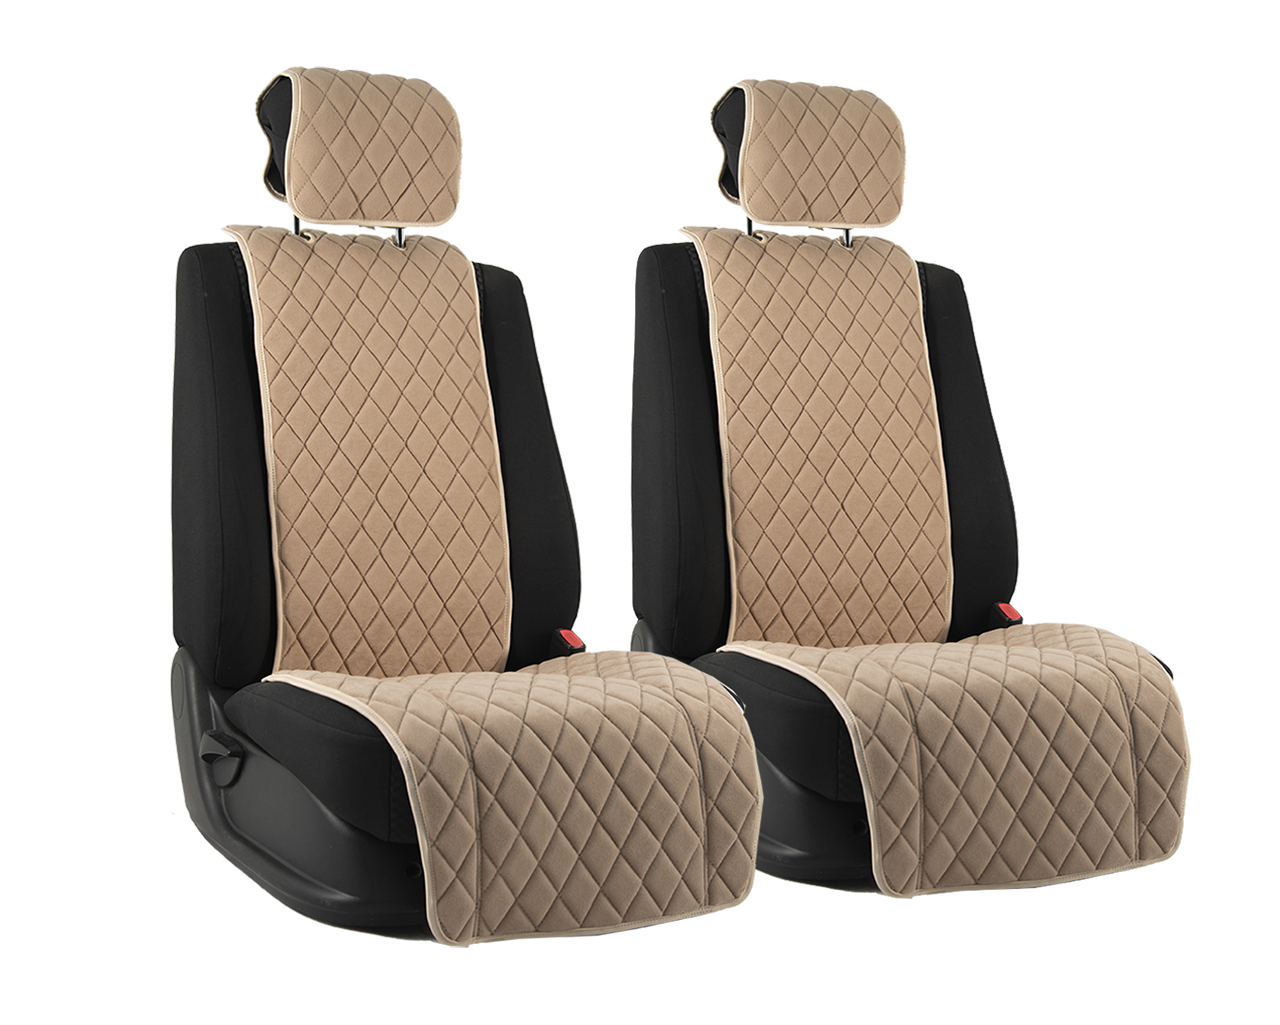 Vital Technologies Комплект накидок на передние сиденья из велюра (ромб) Beige